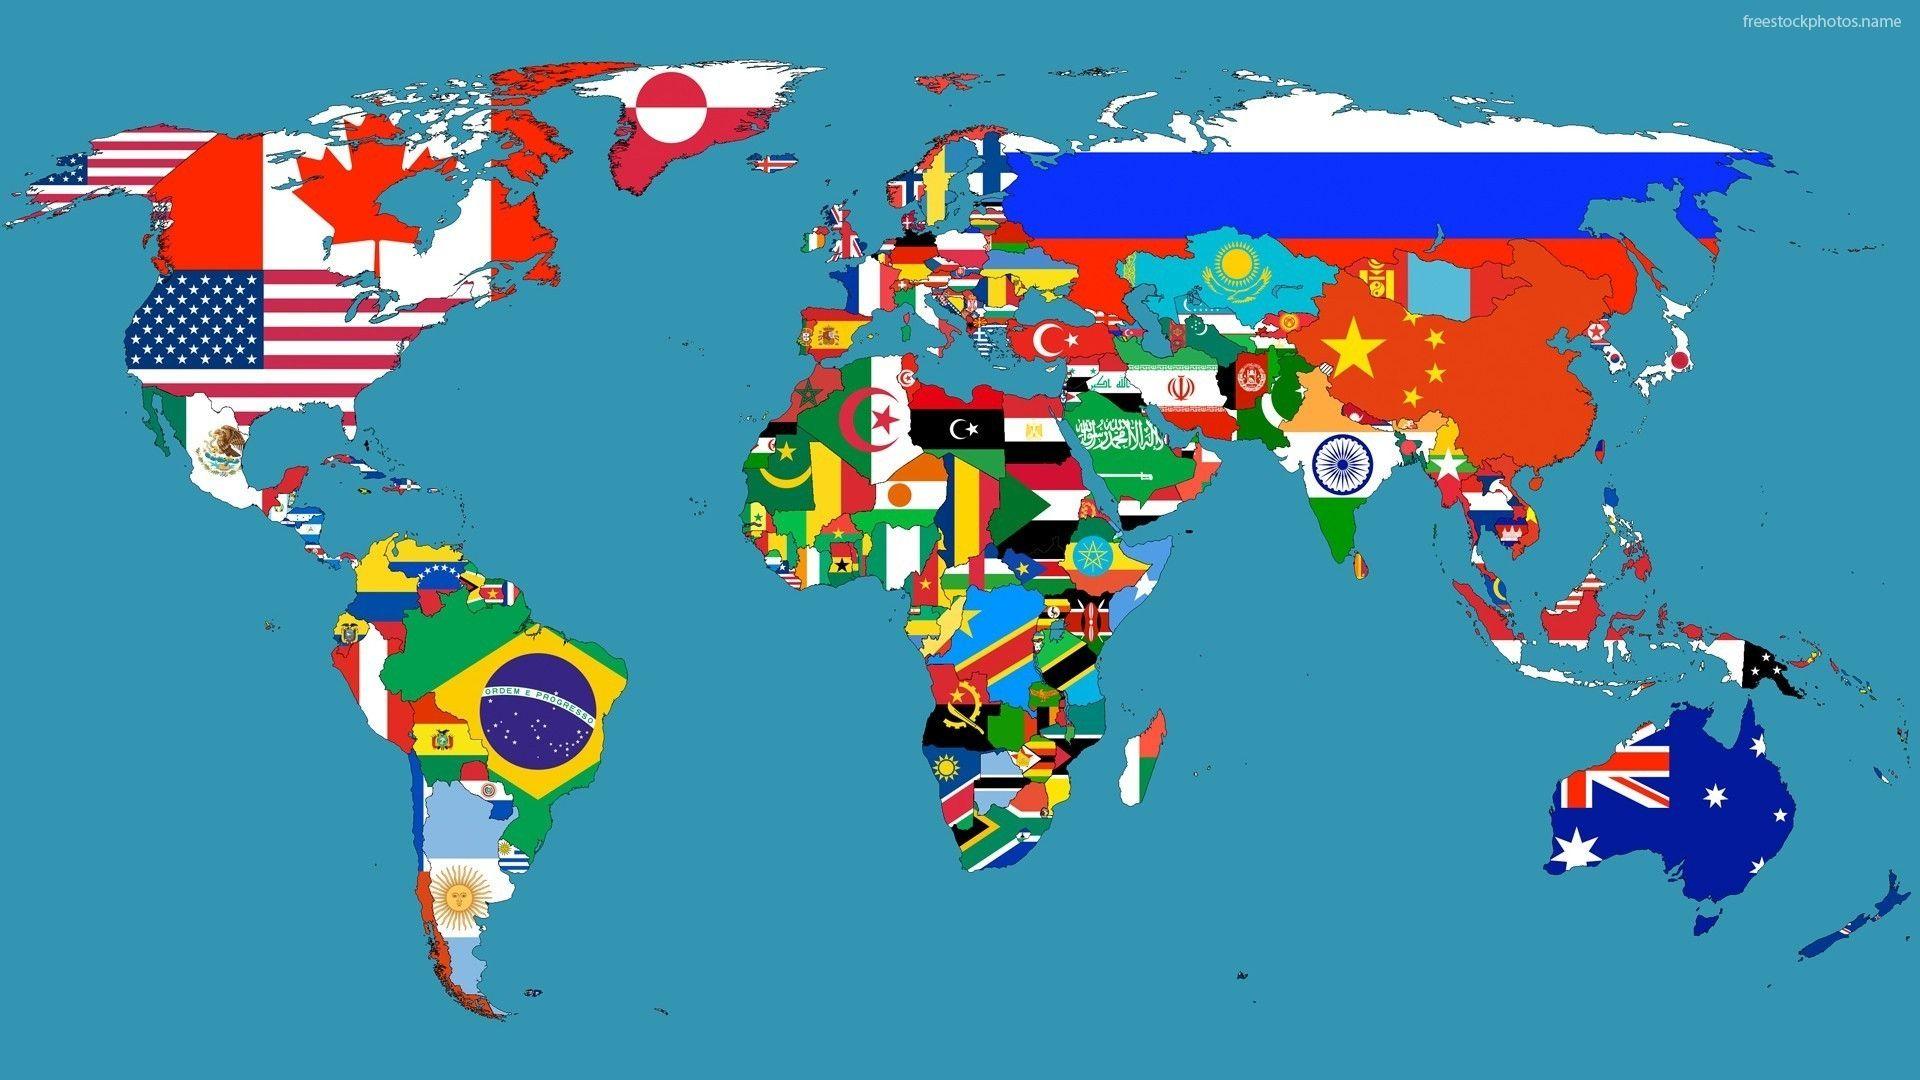 world flags wallpaper hd